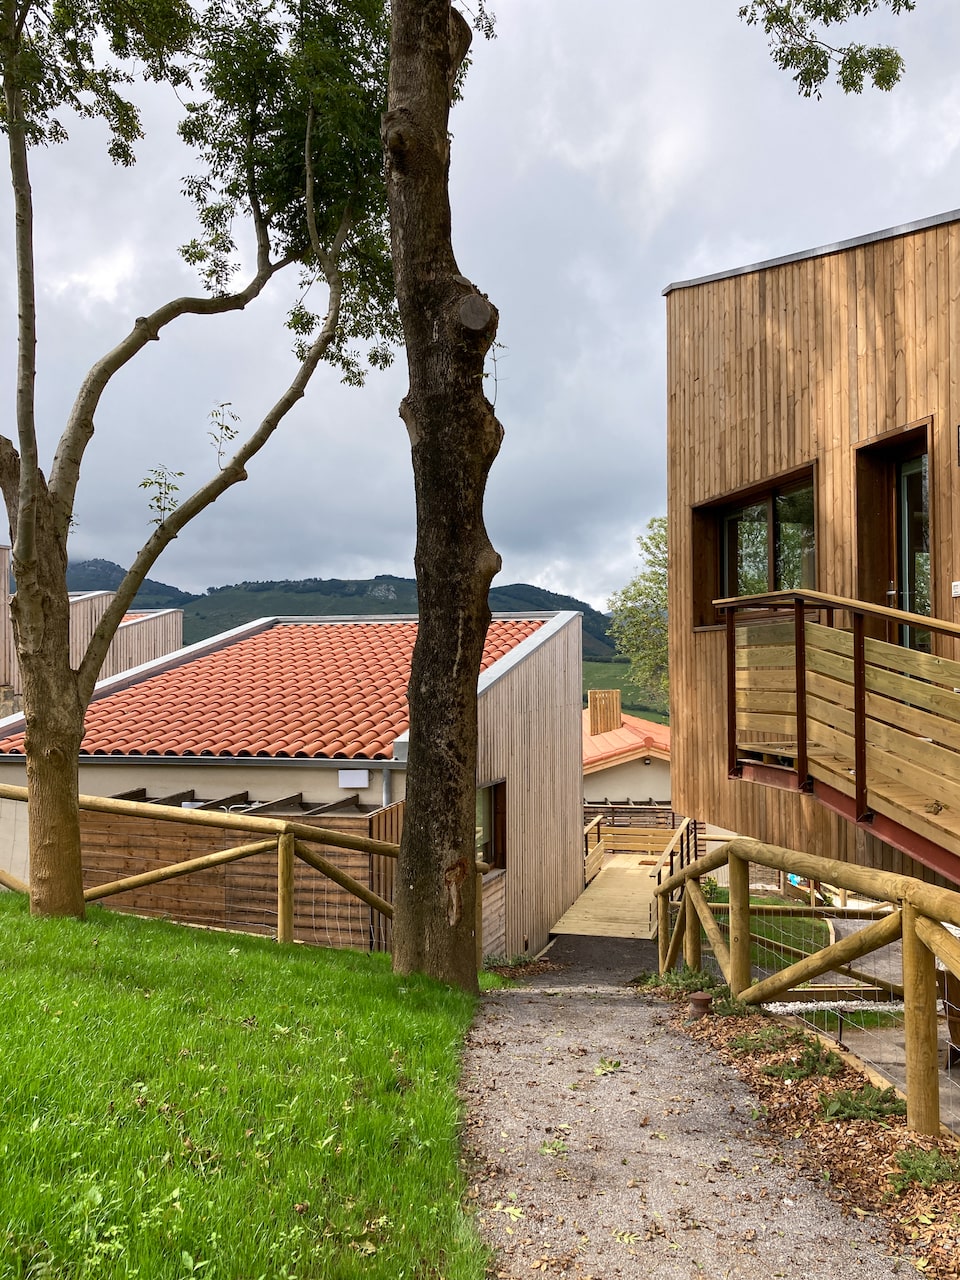 Apartotel en Linares Proaza Asturias proyecto Dolmen Arquitectos